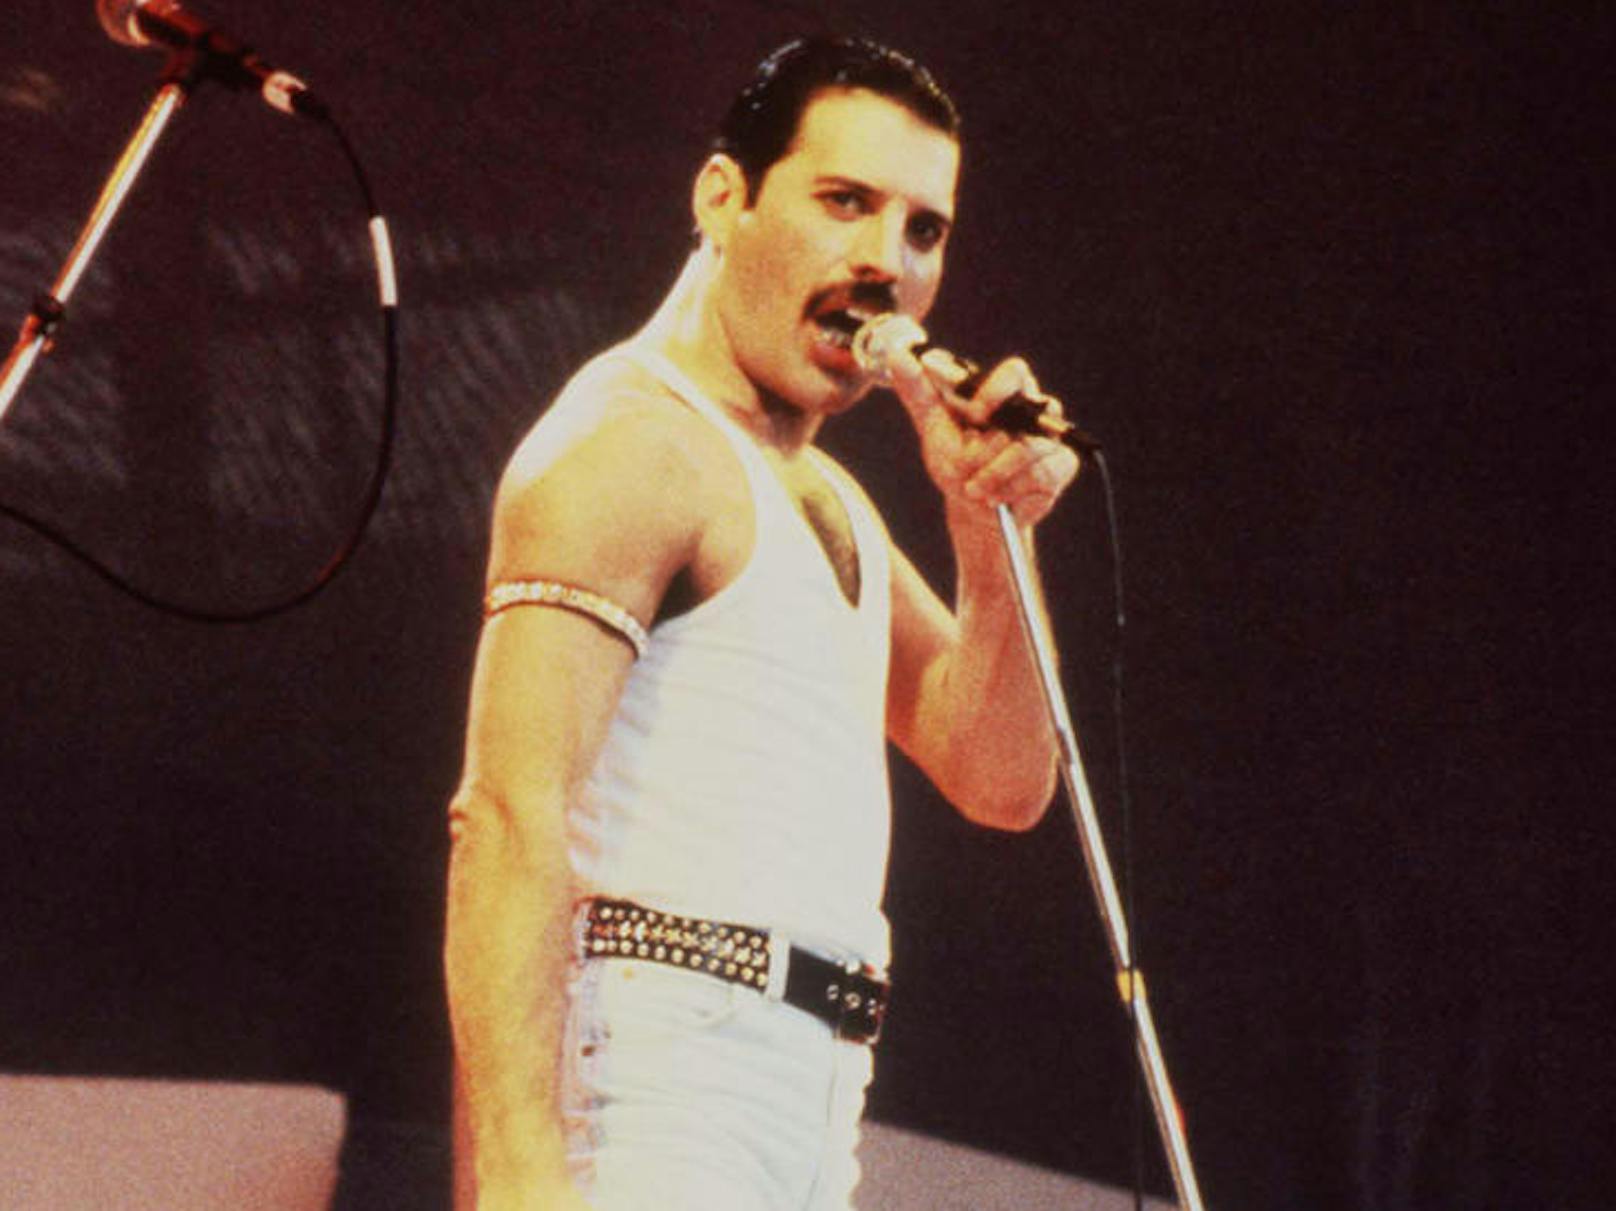 Legendär: Freddie Mercury beim "Live Aid"-Konzert 1995